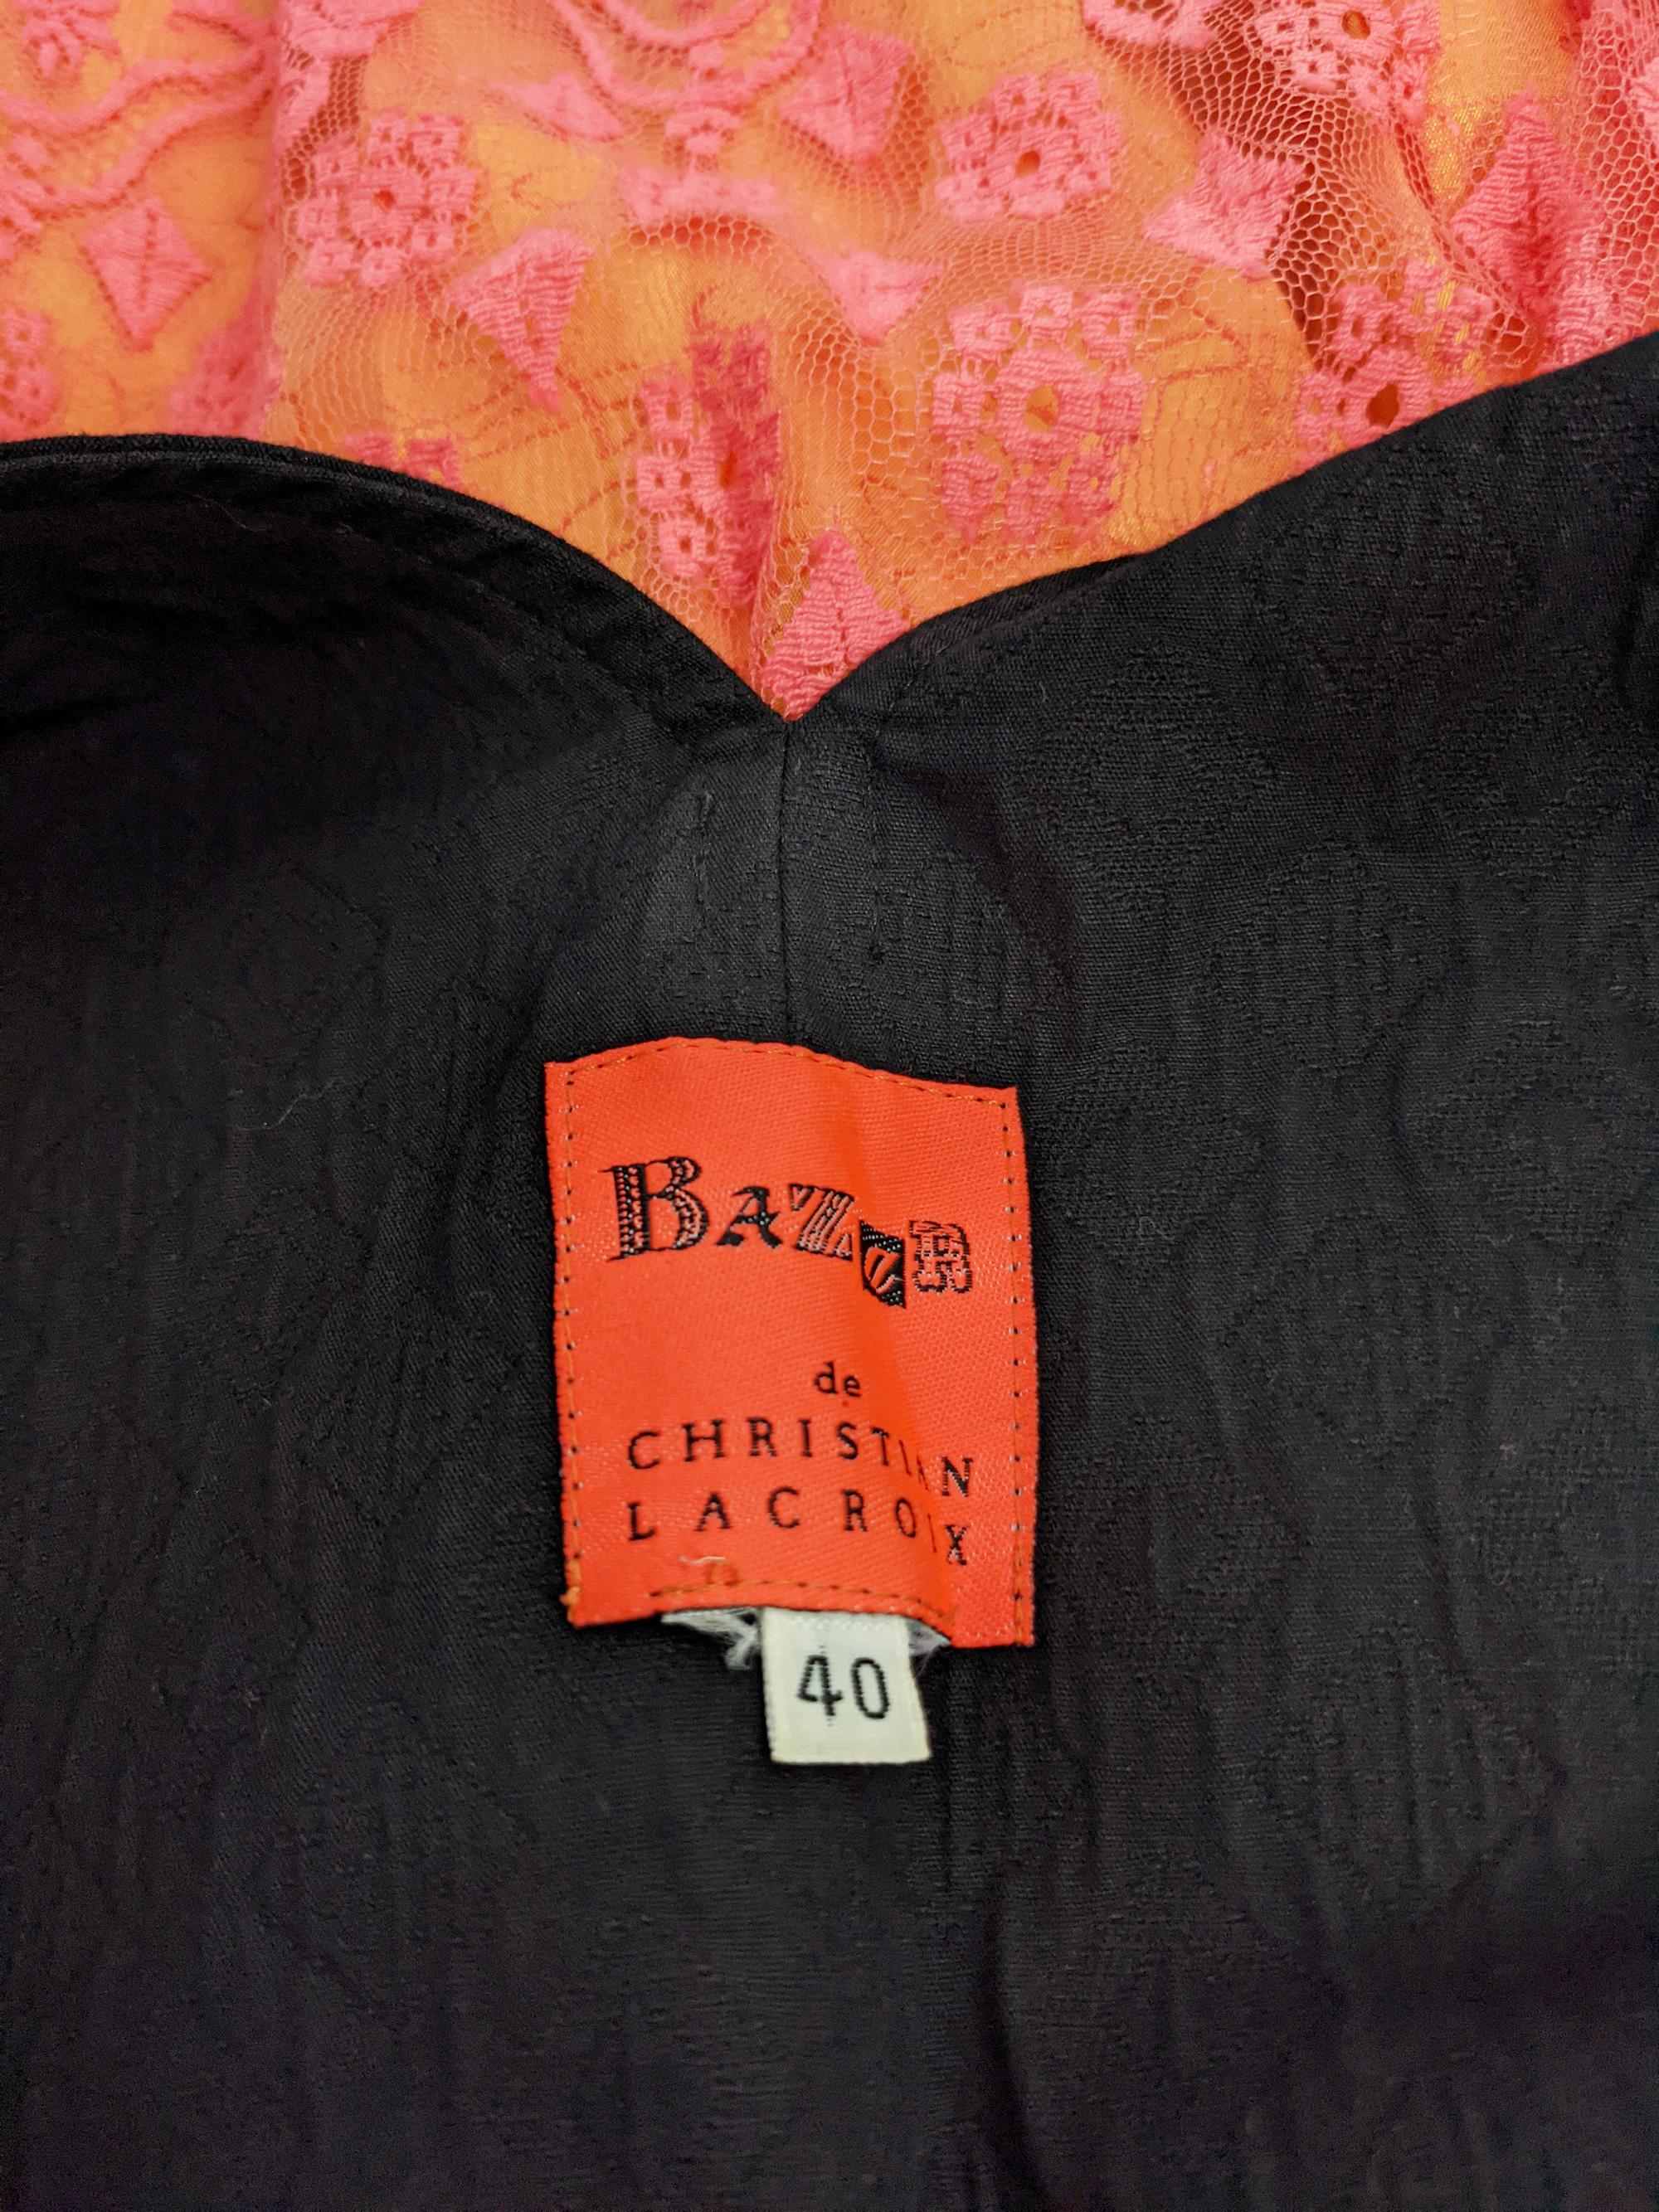 Christian Lacroix Bazar Vintage Black Apron & Coral Lace Dress, 1990s For Sale 4